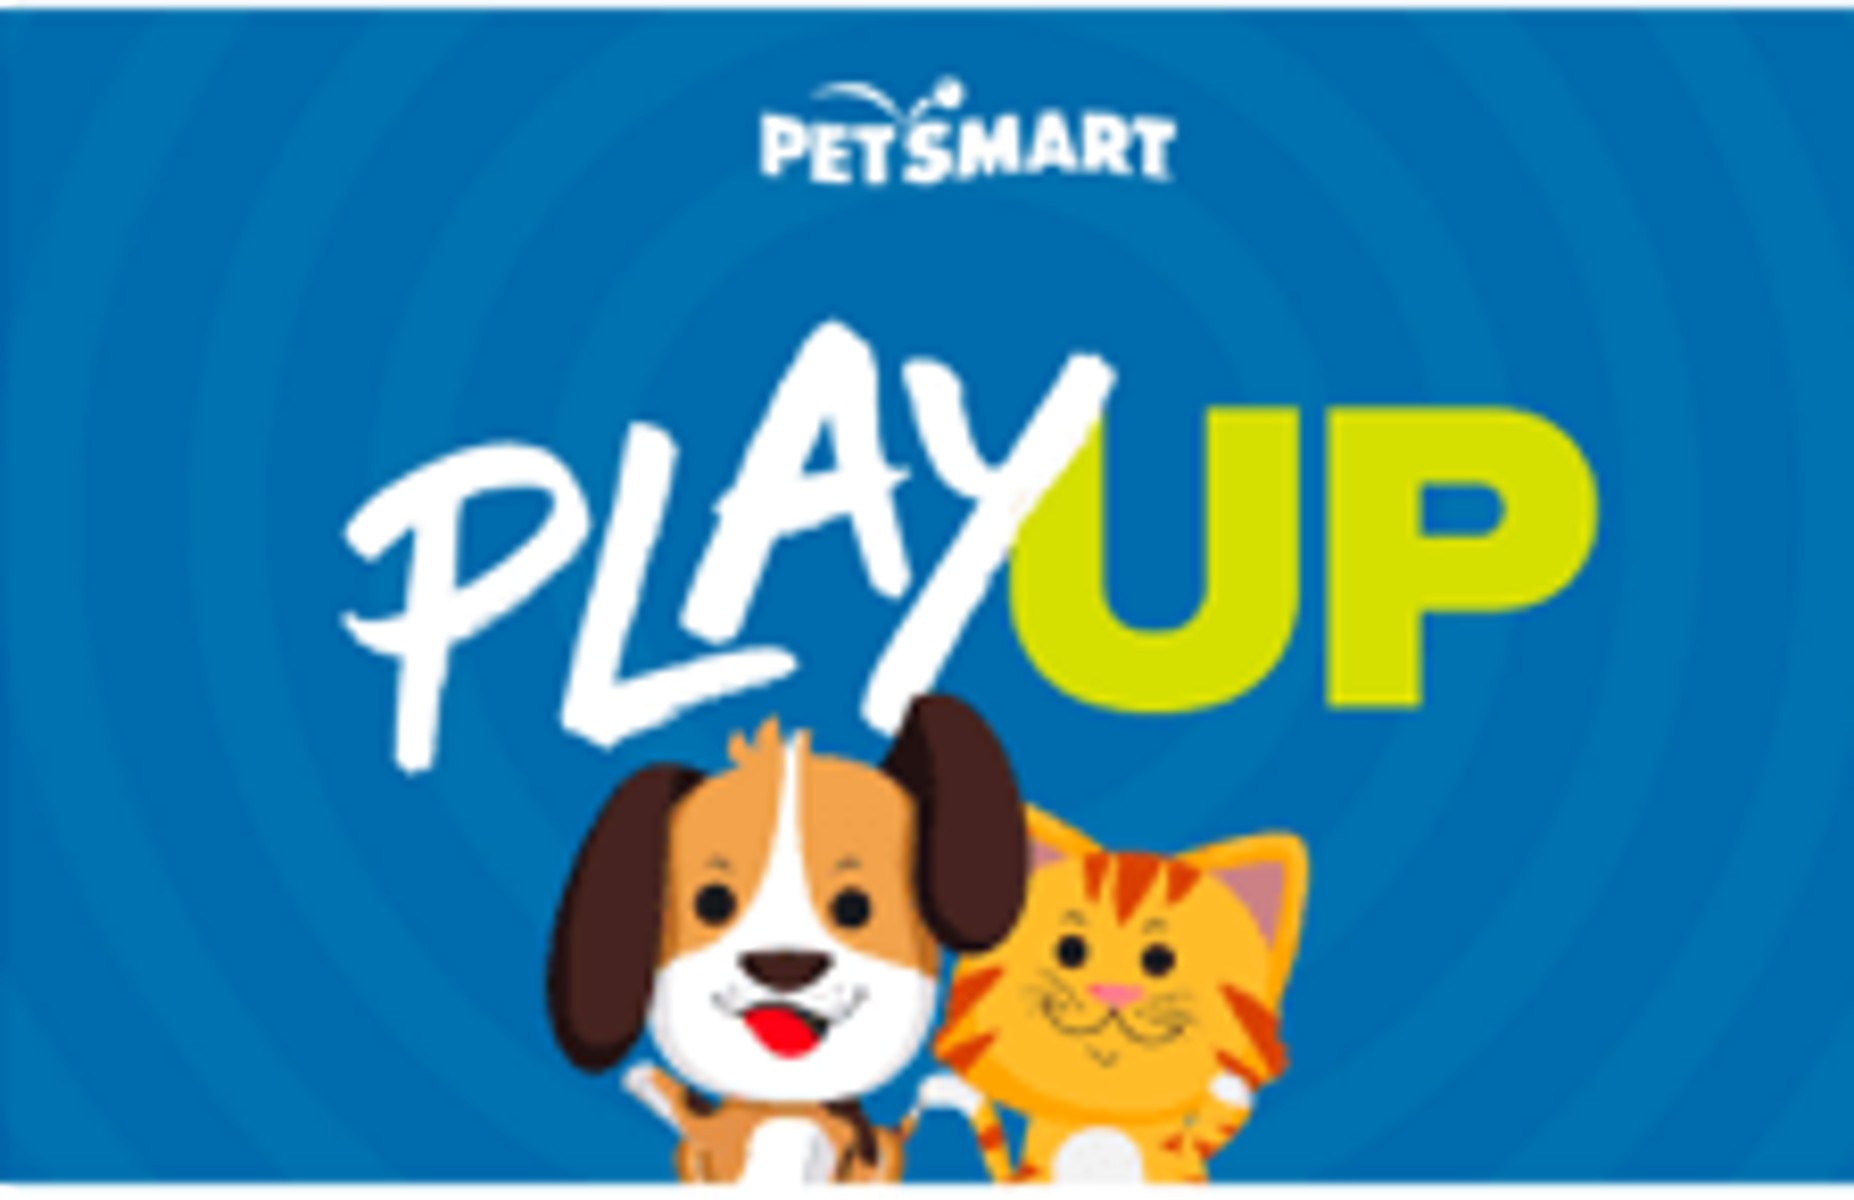 PetSmart Playup